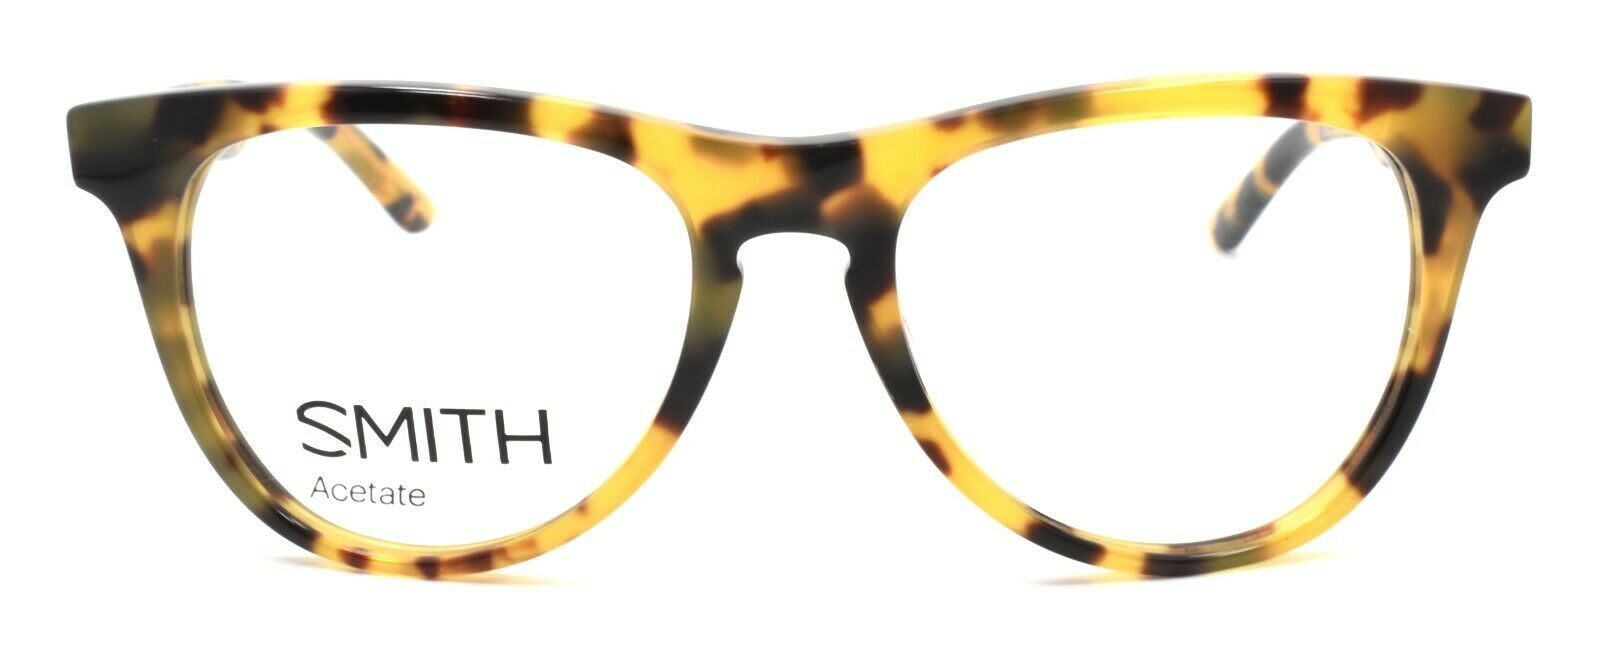 2-SMITH Optics Lynden 0B9 Women's Eyeglasses Frames 49-17-135 Tortoise + CASE-762753230928-IKSpecs